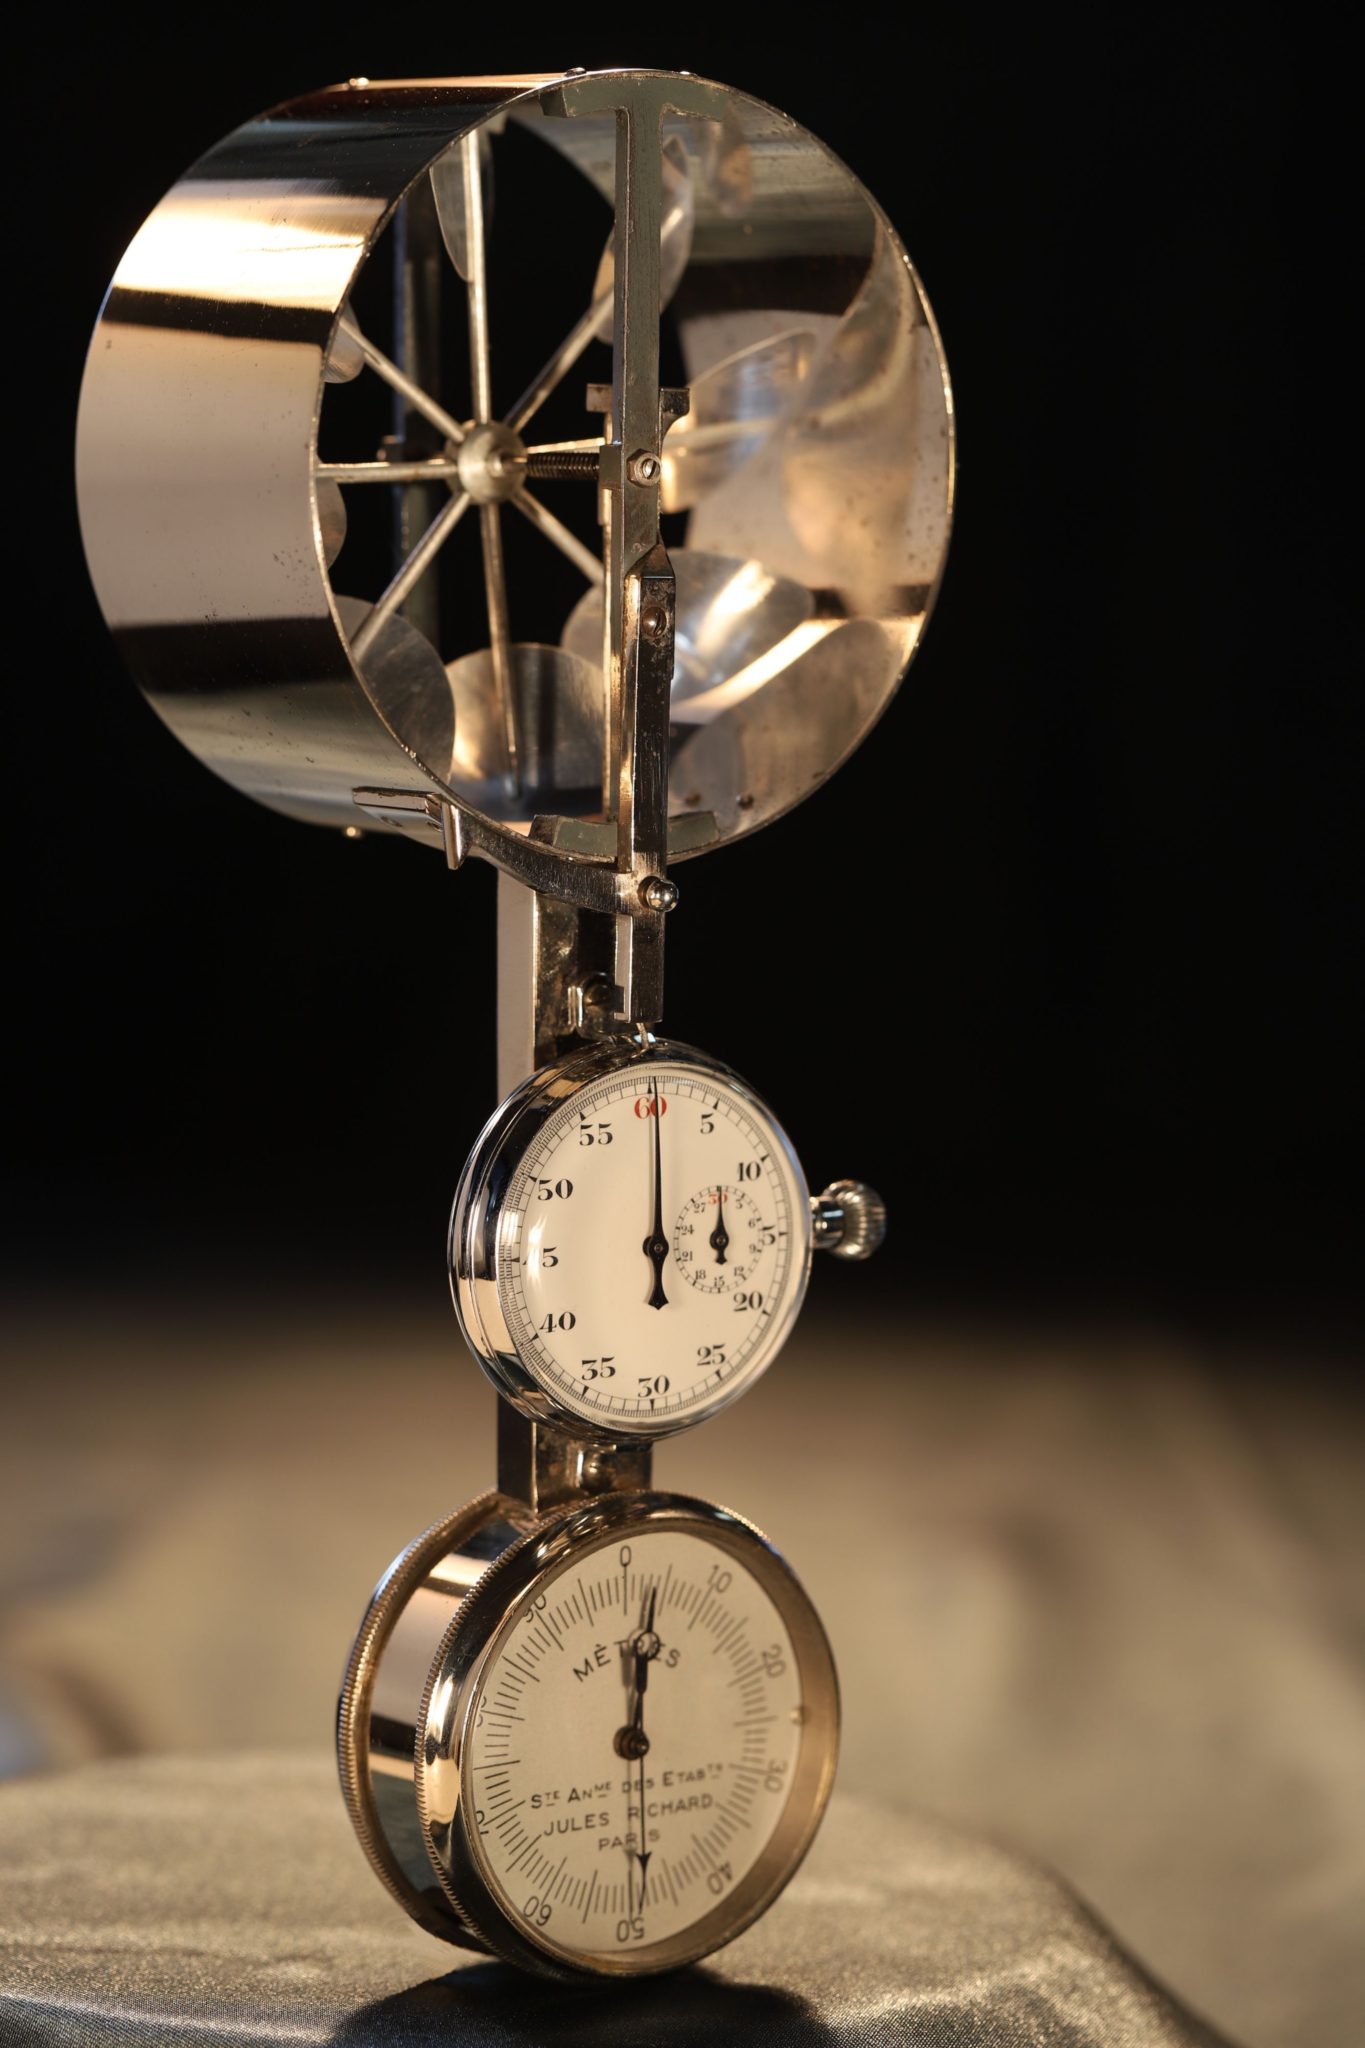 Image of Jules Richard Anemometer No 8180 c1925